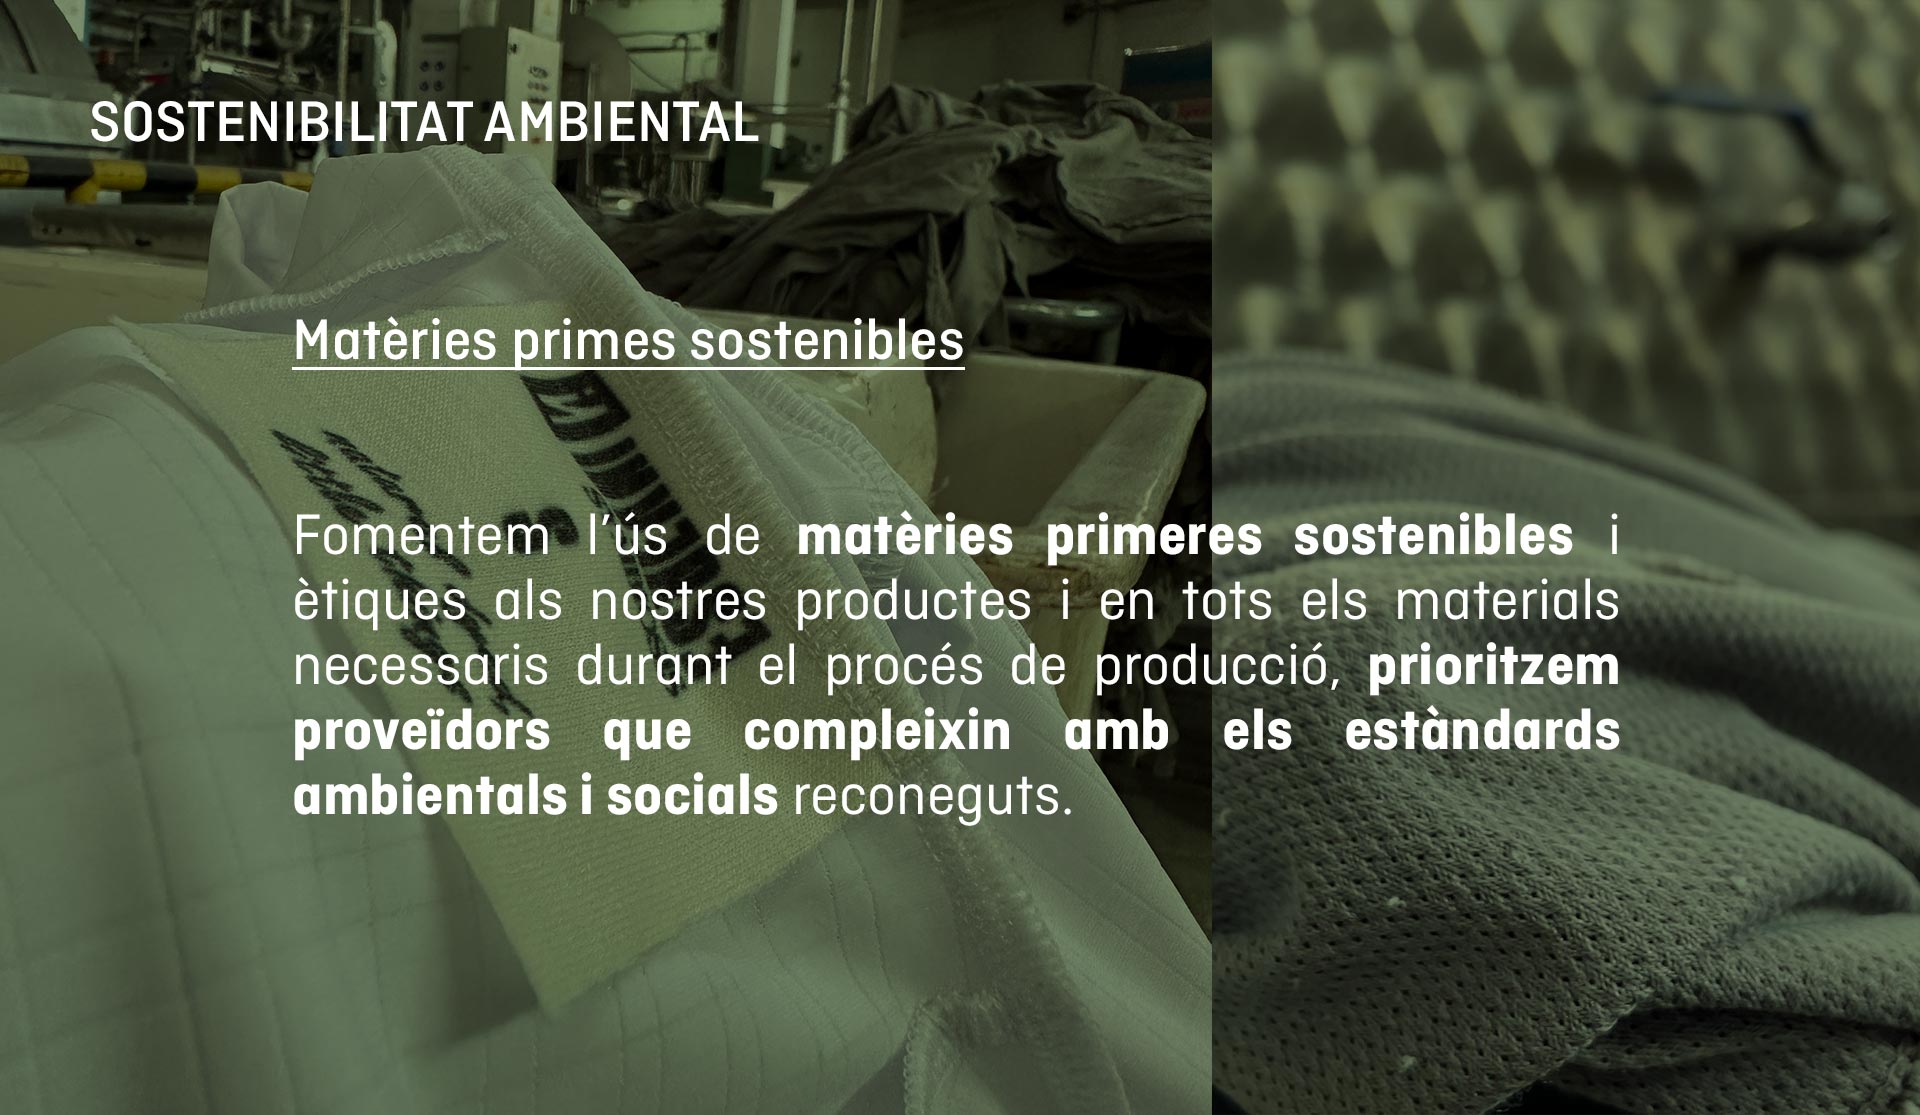 Fomentem l’ús de matèries primeres sostenibles i ètiques als nostres productes i en tots els materials necessaris durant el procés de producció